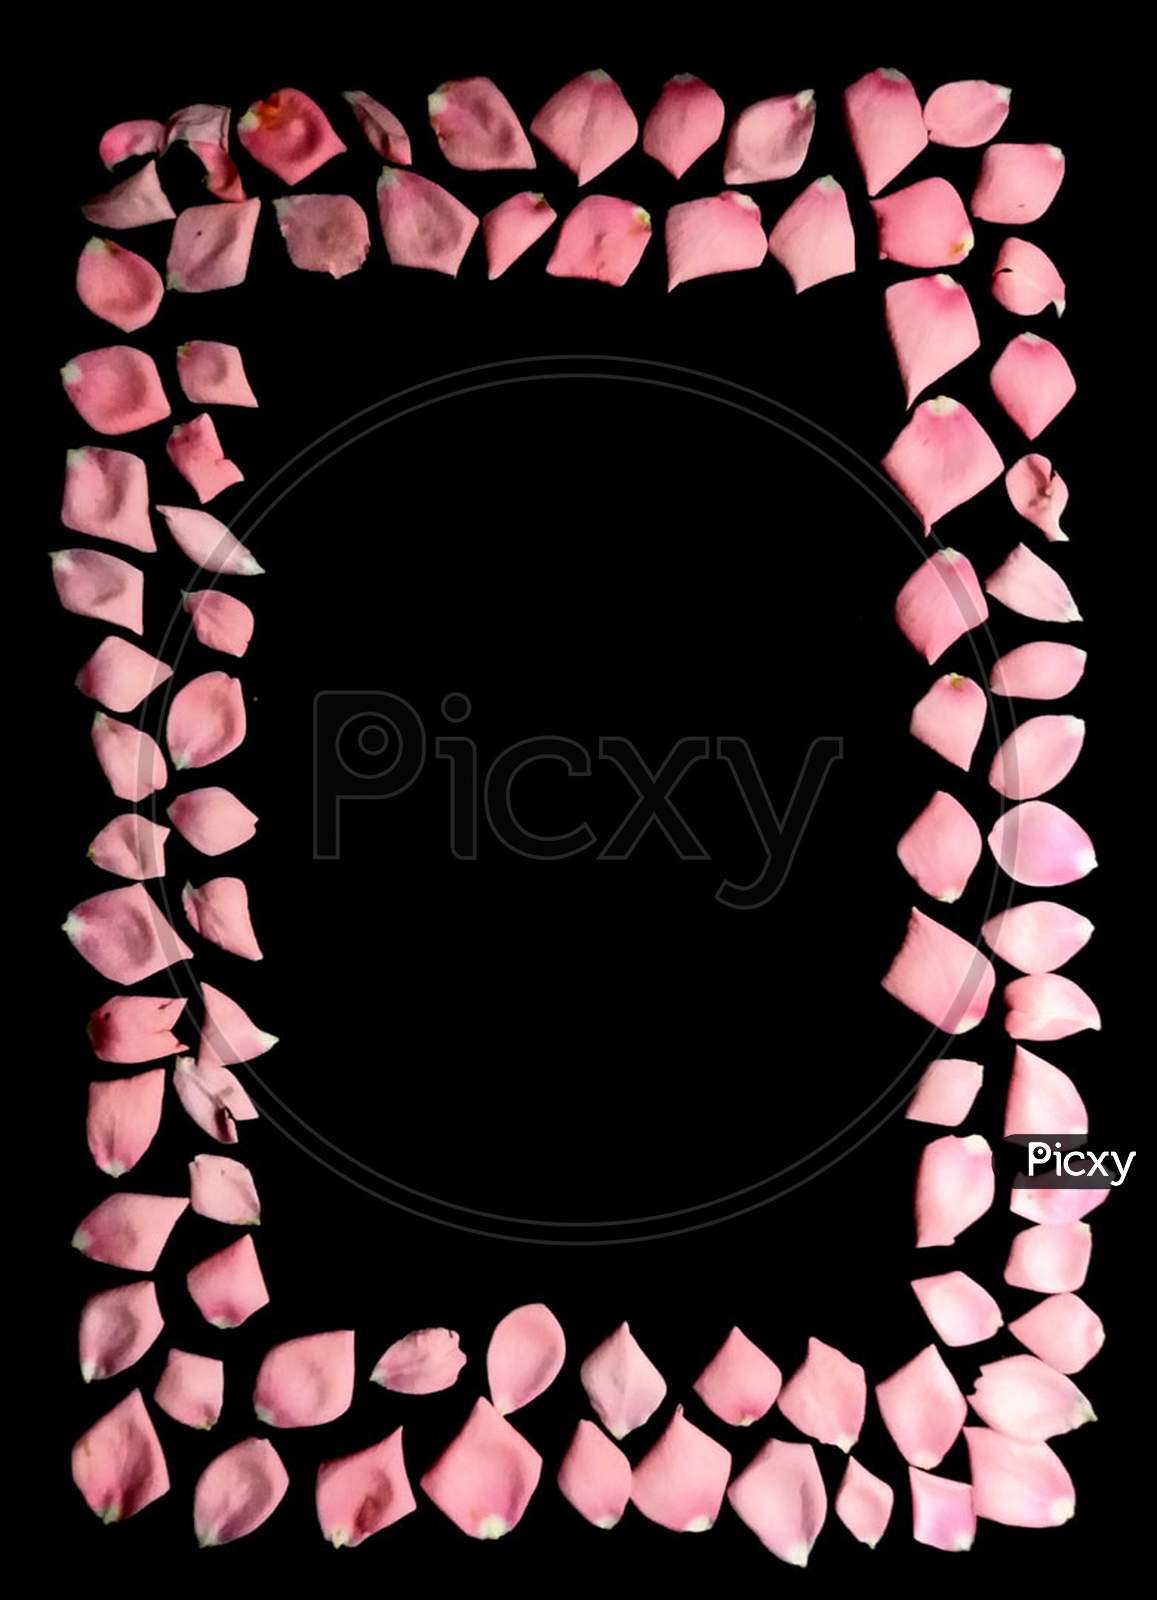 Rectangular frame of rose petals on black background